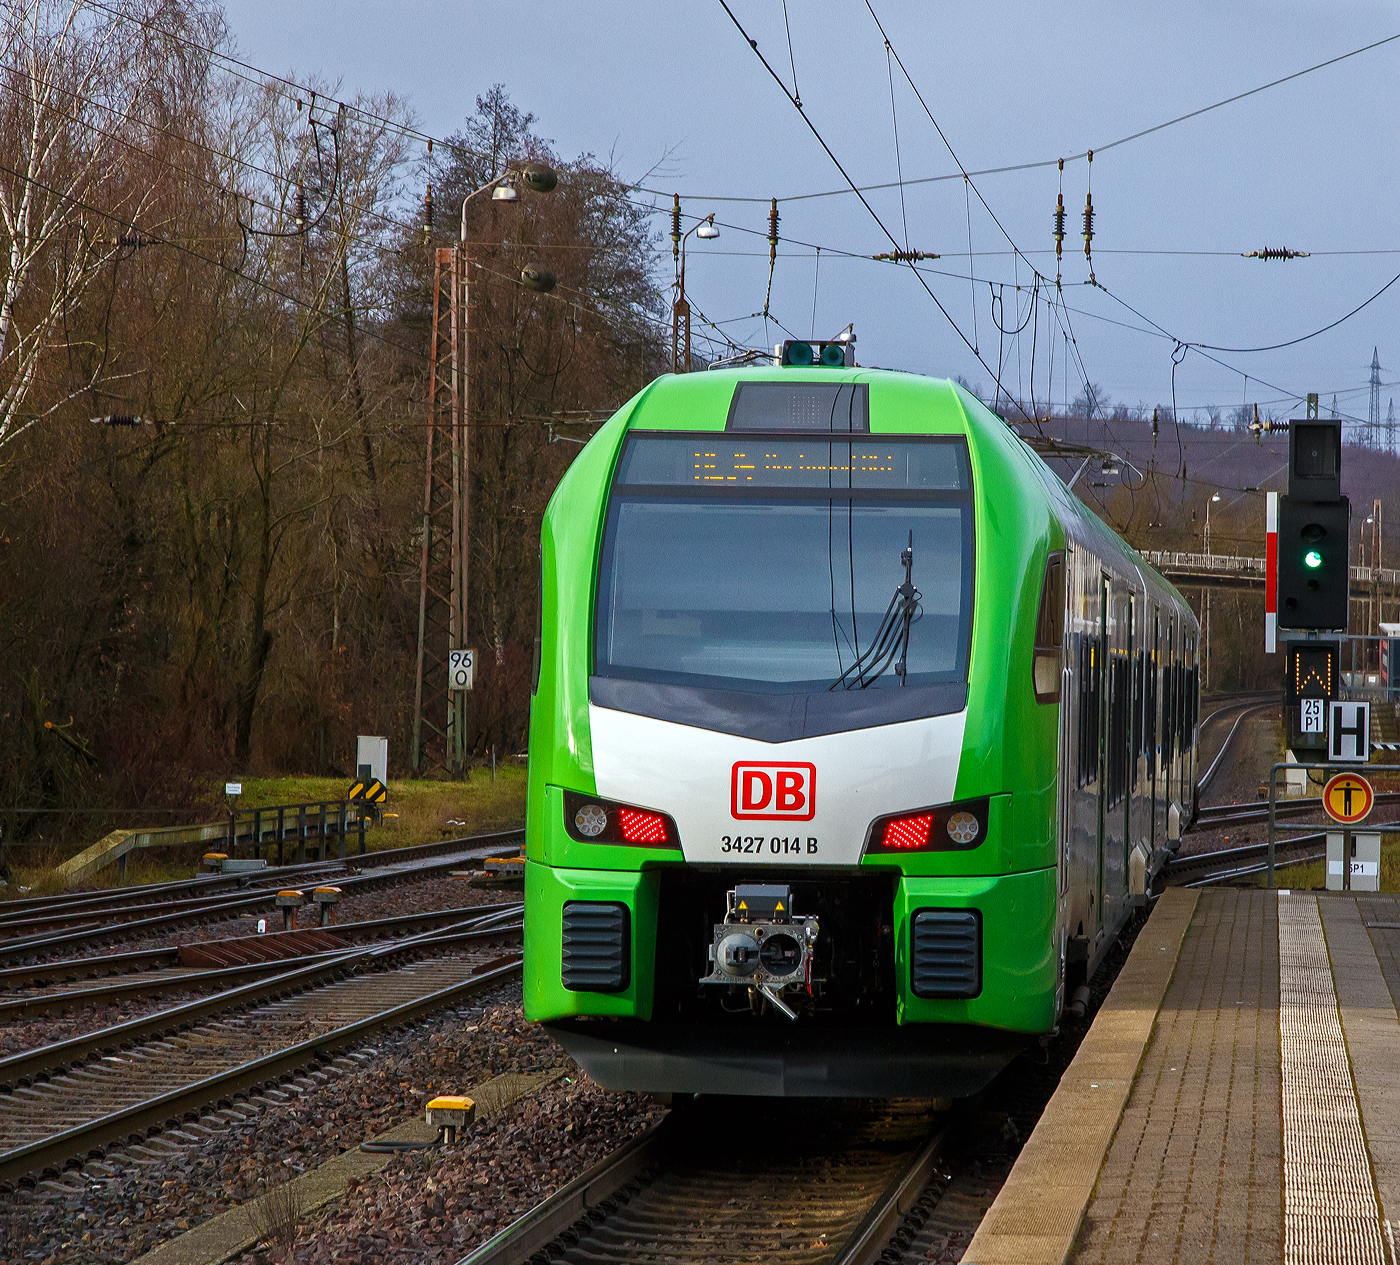 Der für die DB Regio AG – NRW fahrende dreiteilige Stadler FLIRT 3 XL 3427 014 (94 80 3427 014-0 D-STAP / 94 80 3827 014-6 D-STAP / 94 80 3427 514-9 D-STAP) der ZV VRR Eigenbetrieb Fahrzeuge und Infrastruktur, verlässt am 15.12.2022, als RE 34 „Dortmund-Siegerland-Express“ (Siegen - Letmathe - Dortmund), den Bahnhof Kreuztal.

Unter dem „grünen“ Signal (Signal Ks 1 – fahrt) wird ein „W“ als Signal Zs 2 – Richtungsanzeiger gezeigt, dies bedeutet hier das die Weiche (Fahrstraße) auf geradeaus in Richtung Welschen Ennest gestellt ist.

Der Stadler FLIRT 3 XL wurde 2020 von der Stadler Pankow GmbH in Berlin unter den Fabriknummern 42354 bis 42356 gebaut und an den Zweckverband Verkehrsverbund Rhein-Ruhr Eigenbetrieb Fahrzeuge und Infrastruktur geliefert. Eigentlich war dieser FLIRT 3 XL wie 9 weitere für die Bedienung der Regiobahnstrecke S 28 Kaarst - Neuss - Düsseldorf - Mettmann - Wuppertal vorgesehen, wo die Elektrifizierung bis 2020 erfolgen sollte. Da aufgrund von Verzögerungen der elektrische Betrieb voraussichtlich erst 2026 aufgenommen werden kann, wurden die inzwischen gelieferten Triebwagen u. a. von der DB Regio AG NRW eingesetzt.

Stadler FLIRT 3 XL, dreiteilig der BR 3427:
Die Fahrzeuge der BR 3427 vom Typ STADLER Flirt 3 XL sind, in der sogenannten XL-Ausführung, mit 67.600 mm um 4,4m länger als die normalen STADLER Flirt 3 (BR 1427), zudem haben diese 6 Türen pro Fahrzeugseite (anstatt 3). Der FLIRT verfügt über eine hohe Antriebsleistung (2.720 kW) und eine maximale Geschwindigkeit von 160 km/h. Die 3-Teiler haben 180 Sitzplätze (16 in der 1.Klasse und 154 in der 2. Klasse).

Der VRR Auftrag umfasste die Lieferung von 41 Triebzügen des Typs FLIRT. Die Bestellung teilte sich auf in 17 dreiteilige und 24 fünfteilige Fahrzeuge. Beide Fahrzeugvarianten verfügen über längere Wagenkästen, der sogenannten XL-Ausführung (FLIRT 3 XL). Ergänzend wird Stadler auch die Instandhaltung der Fahrzeuge in den kommenden 30 Jahren verantworten. Die Fahrzeuge kommen auf den Strecken des S-Bahn-Netzes Rhein-Ruhr zum Einsatz. Der FLIRT verfügt über eine hohe Antriebsleistung und eine maximale Geschwindigkeit von 160 km/h. Der helle, freundliche Fahrgastbereich ist barrierefrei und bietet dem Betreiber individuelle Gestaltungsmöglichkeiten. Sie verfügen über bequemere Sitze, überwiegend in 4er-Sitzgruppen mit Vis-à-vis-Anordnung, Toiletten sowie Steckdosen zum Aufladen von Smartphones, Tablets oder Rechnern.

Technik:
• Ausgelegt für die Verbandsfahrt von bis zu 3 Fahrzeugen
• Automatische Mittelpufferkupplungen (Scharfenbergkupplung)
• Leichtbauweise aus Aluminium
• Redundante Antriebsausrüstung bestehend aus 2 Antriebssträngen mit je einem Transformator, IGBT-Stromrichter und 2 Asynchronfahrmotoren
• Luftgefederte Fahrwerke sorgen für die erforderliche Laufruhe
• Die Fahrzeuge wurden in zwei unterschiedlichen Designs ausgeliefert (S-Bahn Rhein-Ruhr Design [grün/weß] sowie Regiobahn Design [rot/weiß])

Komfort:
• Klare Trennung von Mehrzweckbereichen für den Fahrradtransport sowie für die Beförderung von Rollstuhlfahrern
• 12 Fahrradstellplätze
• 2 extrabreite zweiflügelige Schwenkschiebetüren je Wagenkasten
• Klimatisierter Fahrgastraum und Fahrerraum
• 1 geschlossenes WC-System je EMU3 bzw. 2 geschlossene WC-Systeme je EMU5
• Einstiegshöhe 780 mm
• Modernes Fahrgastinformationssystem
• Passagier-WLAN im ganzen Fahrgastraum

TECHNISCHE DATEN (BR 3427 - Stadler FLIRT 3 XL, dreiteilig):
Spurweite: 1.435 mm (Normalspur)
Achsanordnung: Bo' 2' 2' Bo'
Länge über Kupplung: 67.600 mm
Fahrzeugbreite: 2.820 mm
Fahrzeughöhe: 4.270 mm
Fußbodenhöhe Niederflur: 780 mm
Fußbodenhöhe Hochflur: 1.150 mm
Einstiegsbreite: 1.800 mm je Tür 
Anzahl der Türen je Fahrzeugseite: 6
Sitzplätze: 180 (1. Klasse 16 / 2. Klasse 164)
Stehplätze (4 Pers./m²): 260
Dienstgewicht: 
Achsabstand im Drehgestell: 2.700 mm
Lauf- und Triebraddurchmesser: 870 mm (neu)
Höchstgeschwindigkeit: 160 km/h
Max. Leistung am Rad: 2.720 kW
Dauerleistung am Rad: 2.000 kW
Max. Anfahrbeschleunigun: 1,2 m/s²
Kupplung: Scharfenbergkupplung (Schaku) Typ 10

Quellen: Stadler Rail